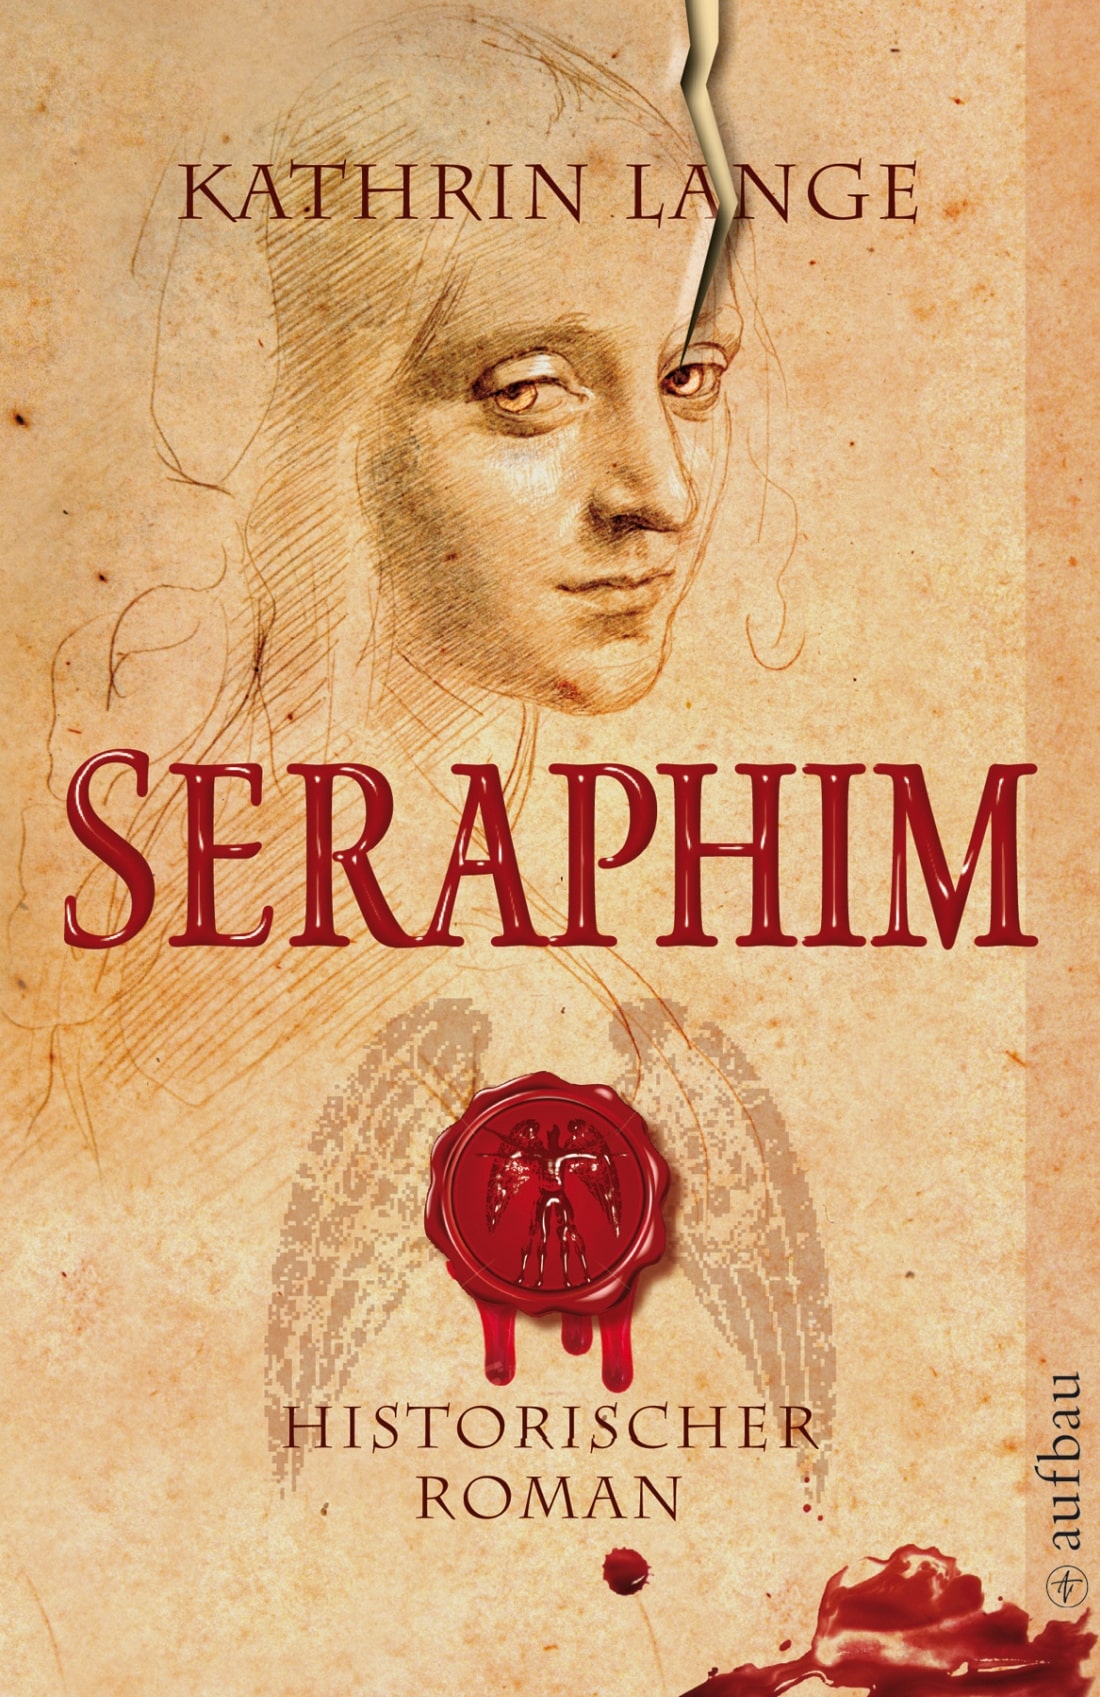 LITL052 [Podcast] Rezension: Seraphim  – Kathrin Lange